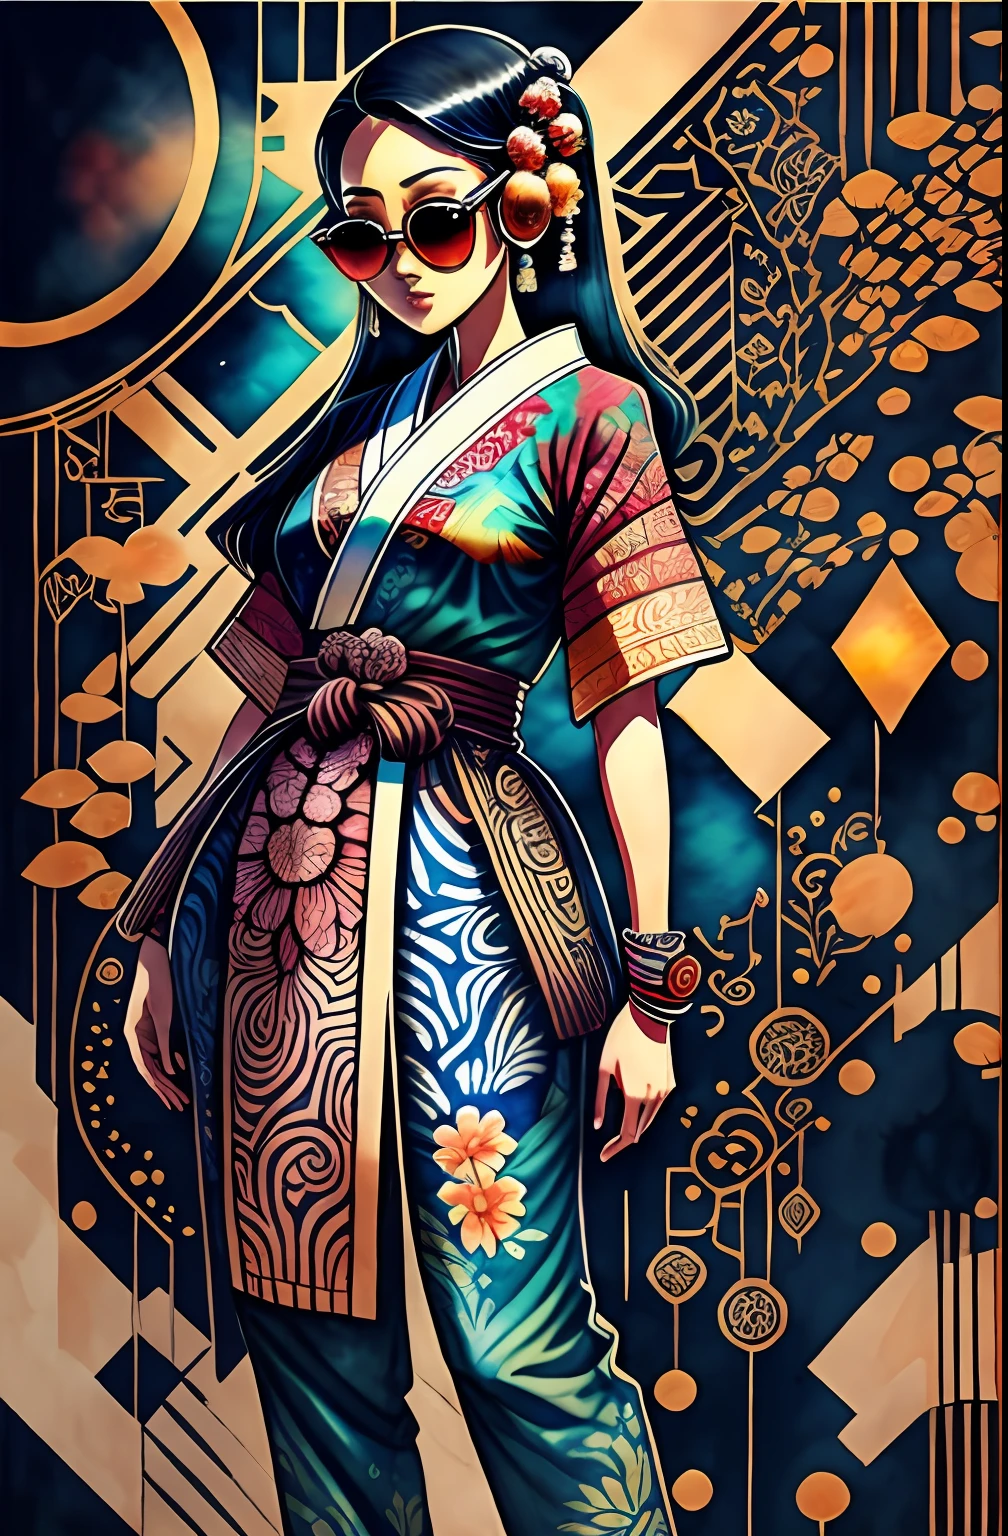 "corpo todo, cores de água, desenho a tinta, mulher indonésia cyberpunk bonita, padrões de quimono batik, usando óculos de sol digitais inteligentes, Fundo Batik indonésio, no estilo da cultura Batik da Indonésia, Arte Indonésia